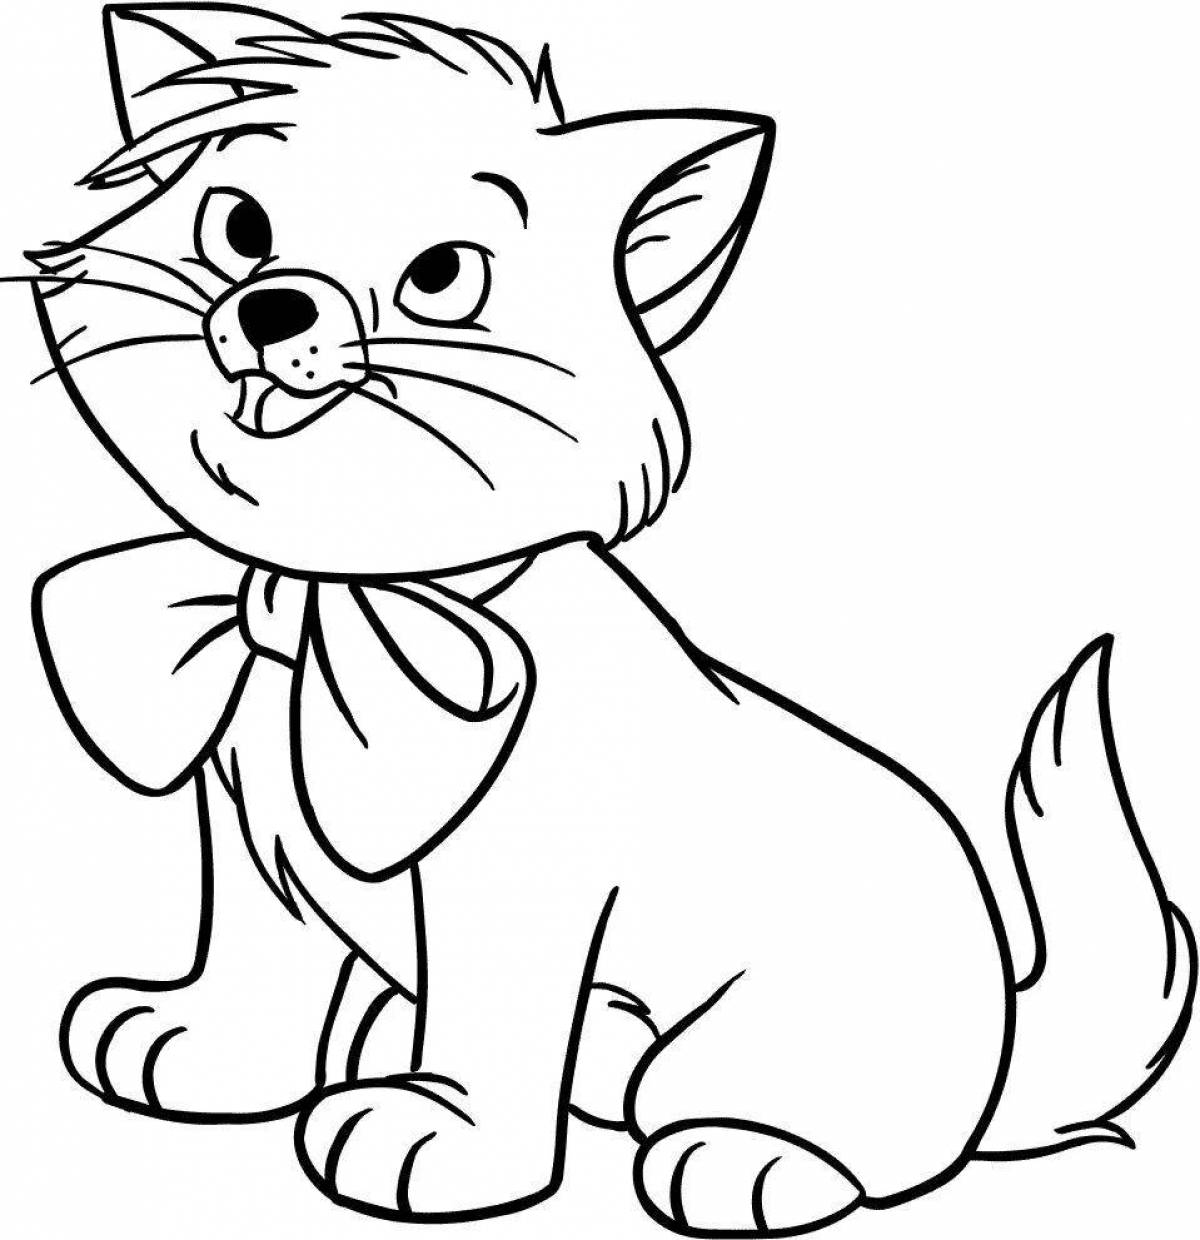 Раскраска кошки для детей 4 5 лет. Рисунки для раскрашивания. Раскраска кот. Кошка раскраска для детей. Котенок раскраска для малышей.